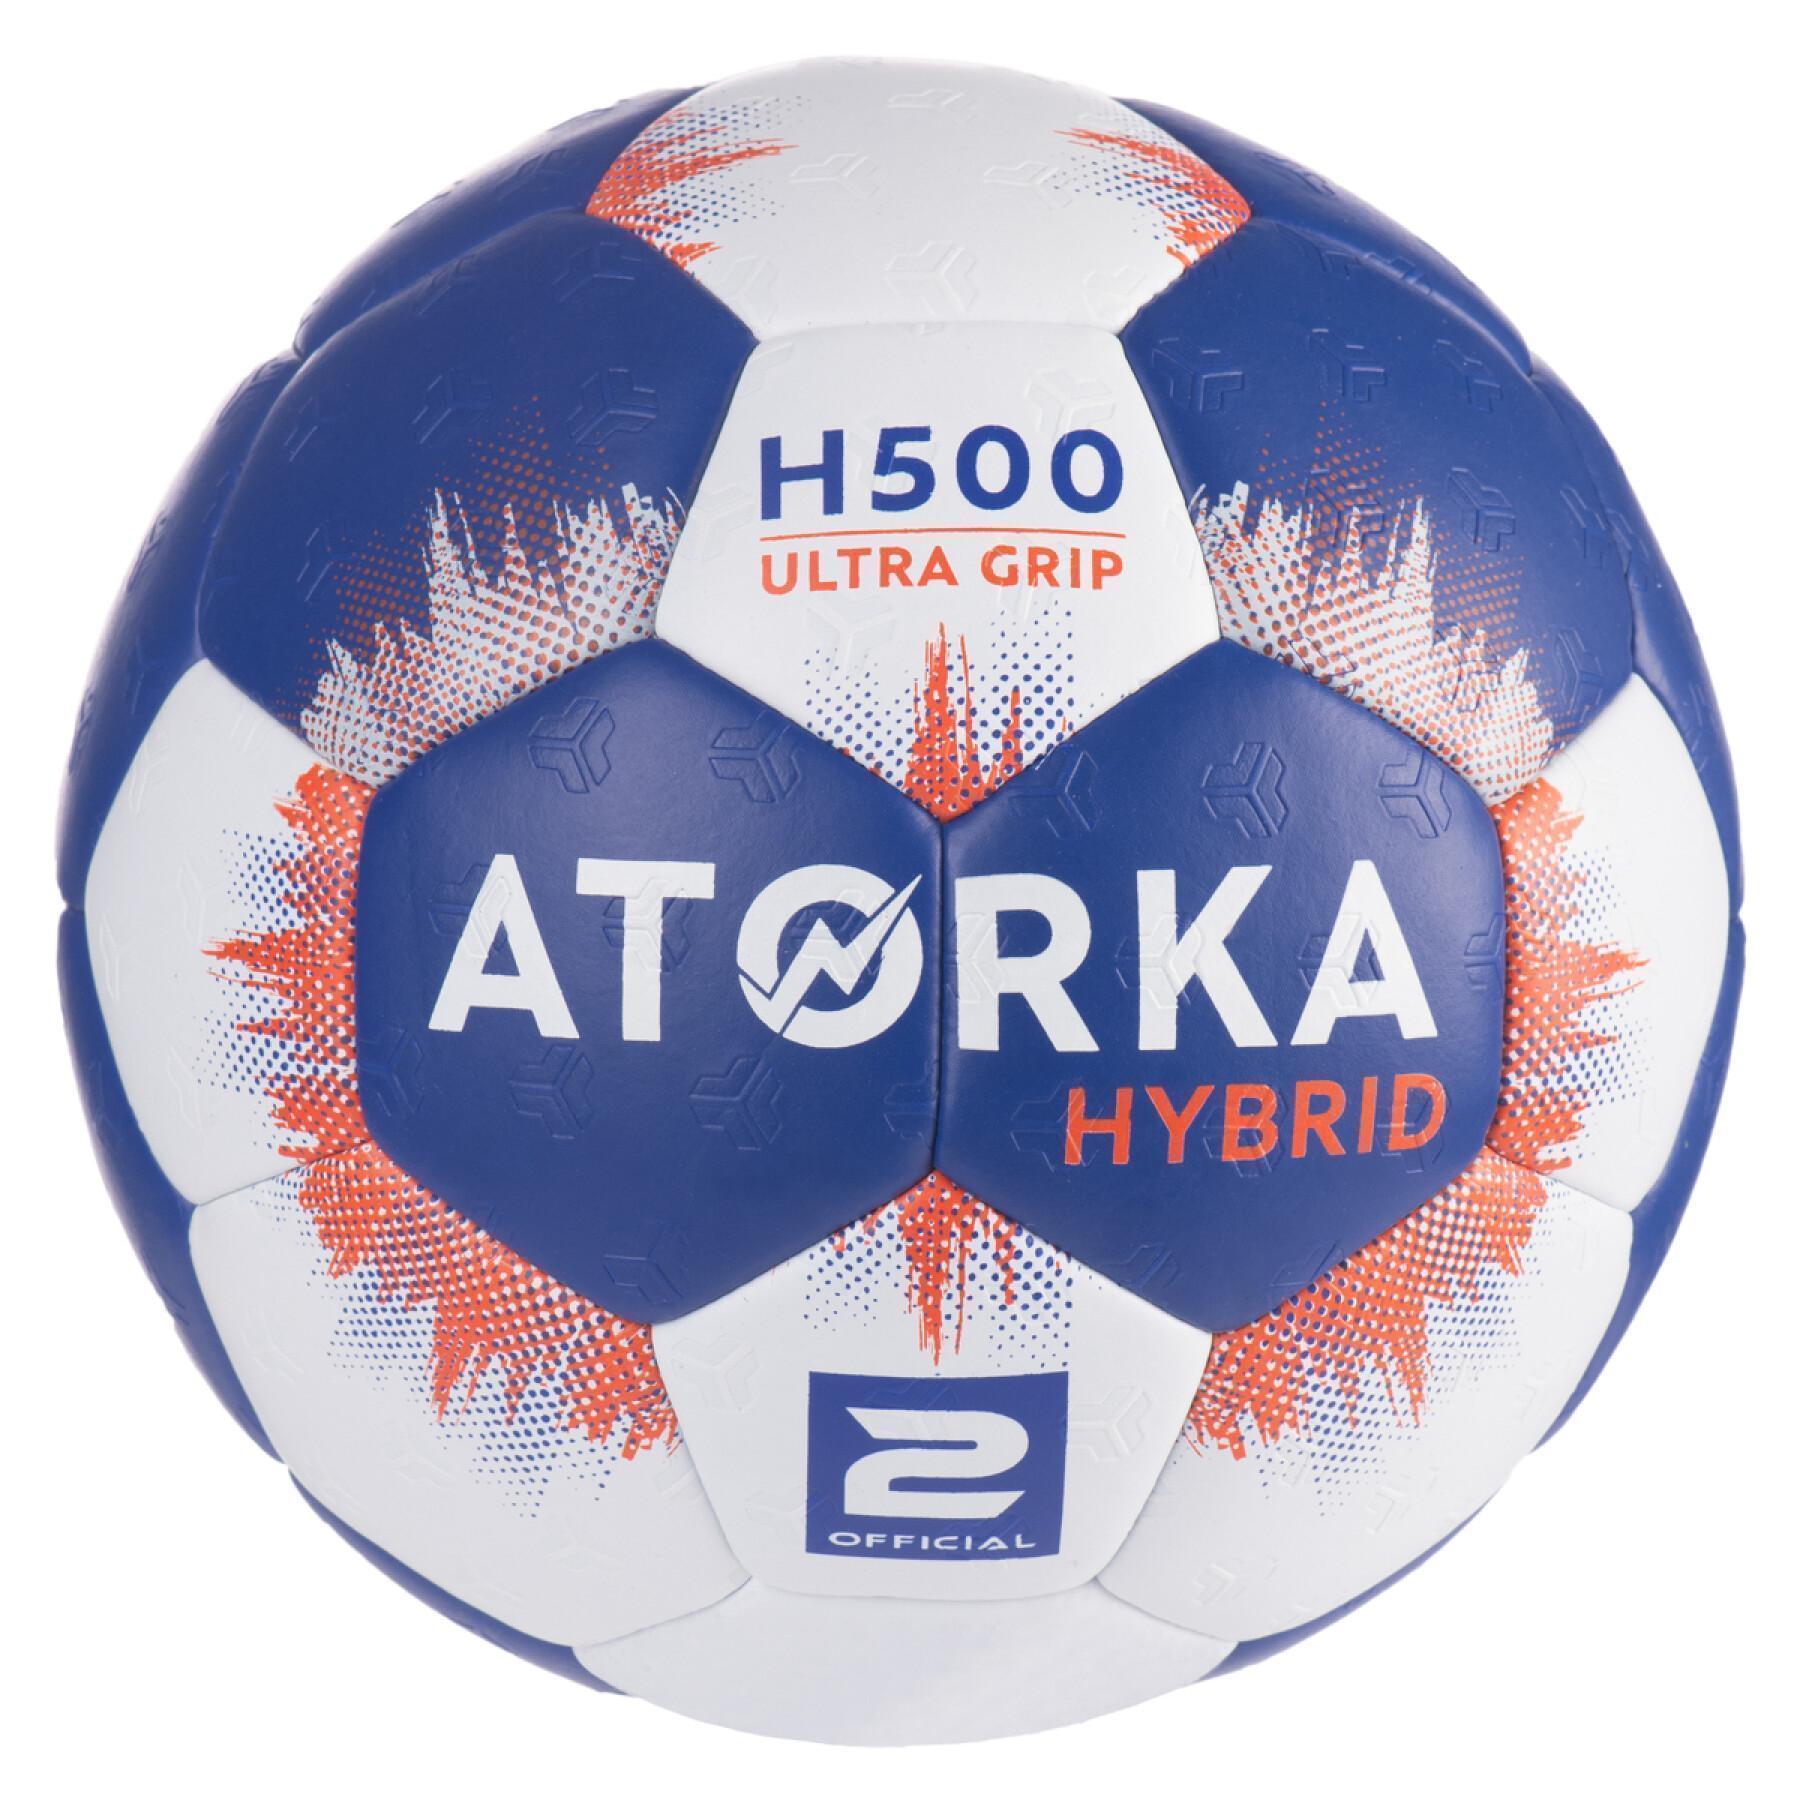 Balon Atorka H500 Taille 2